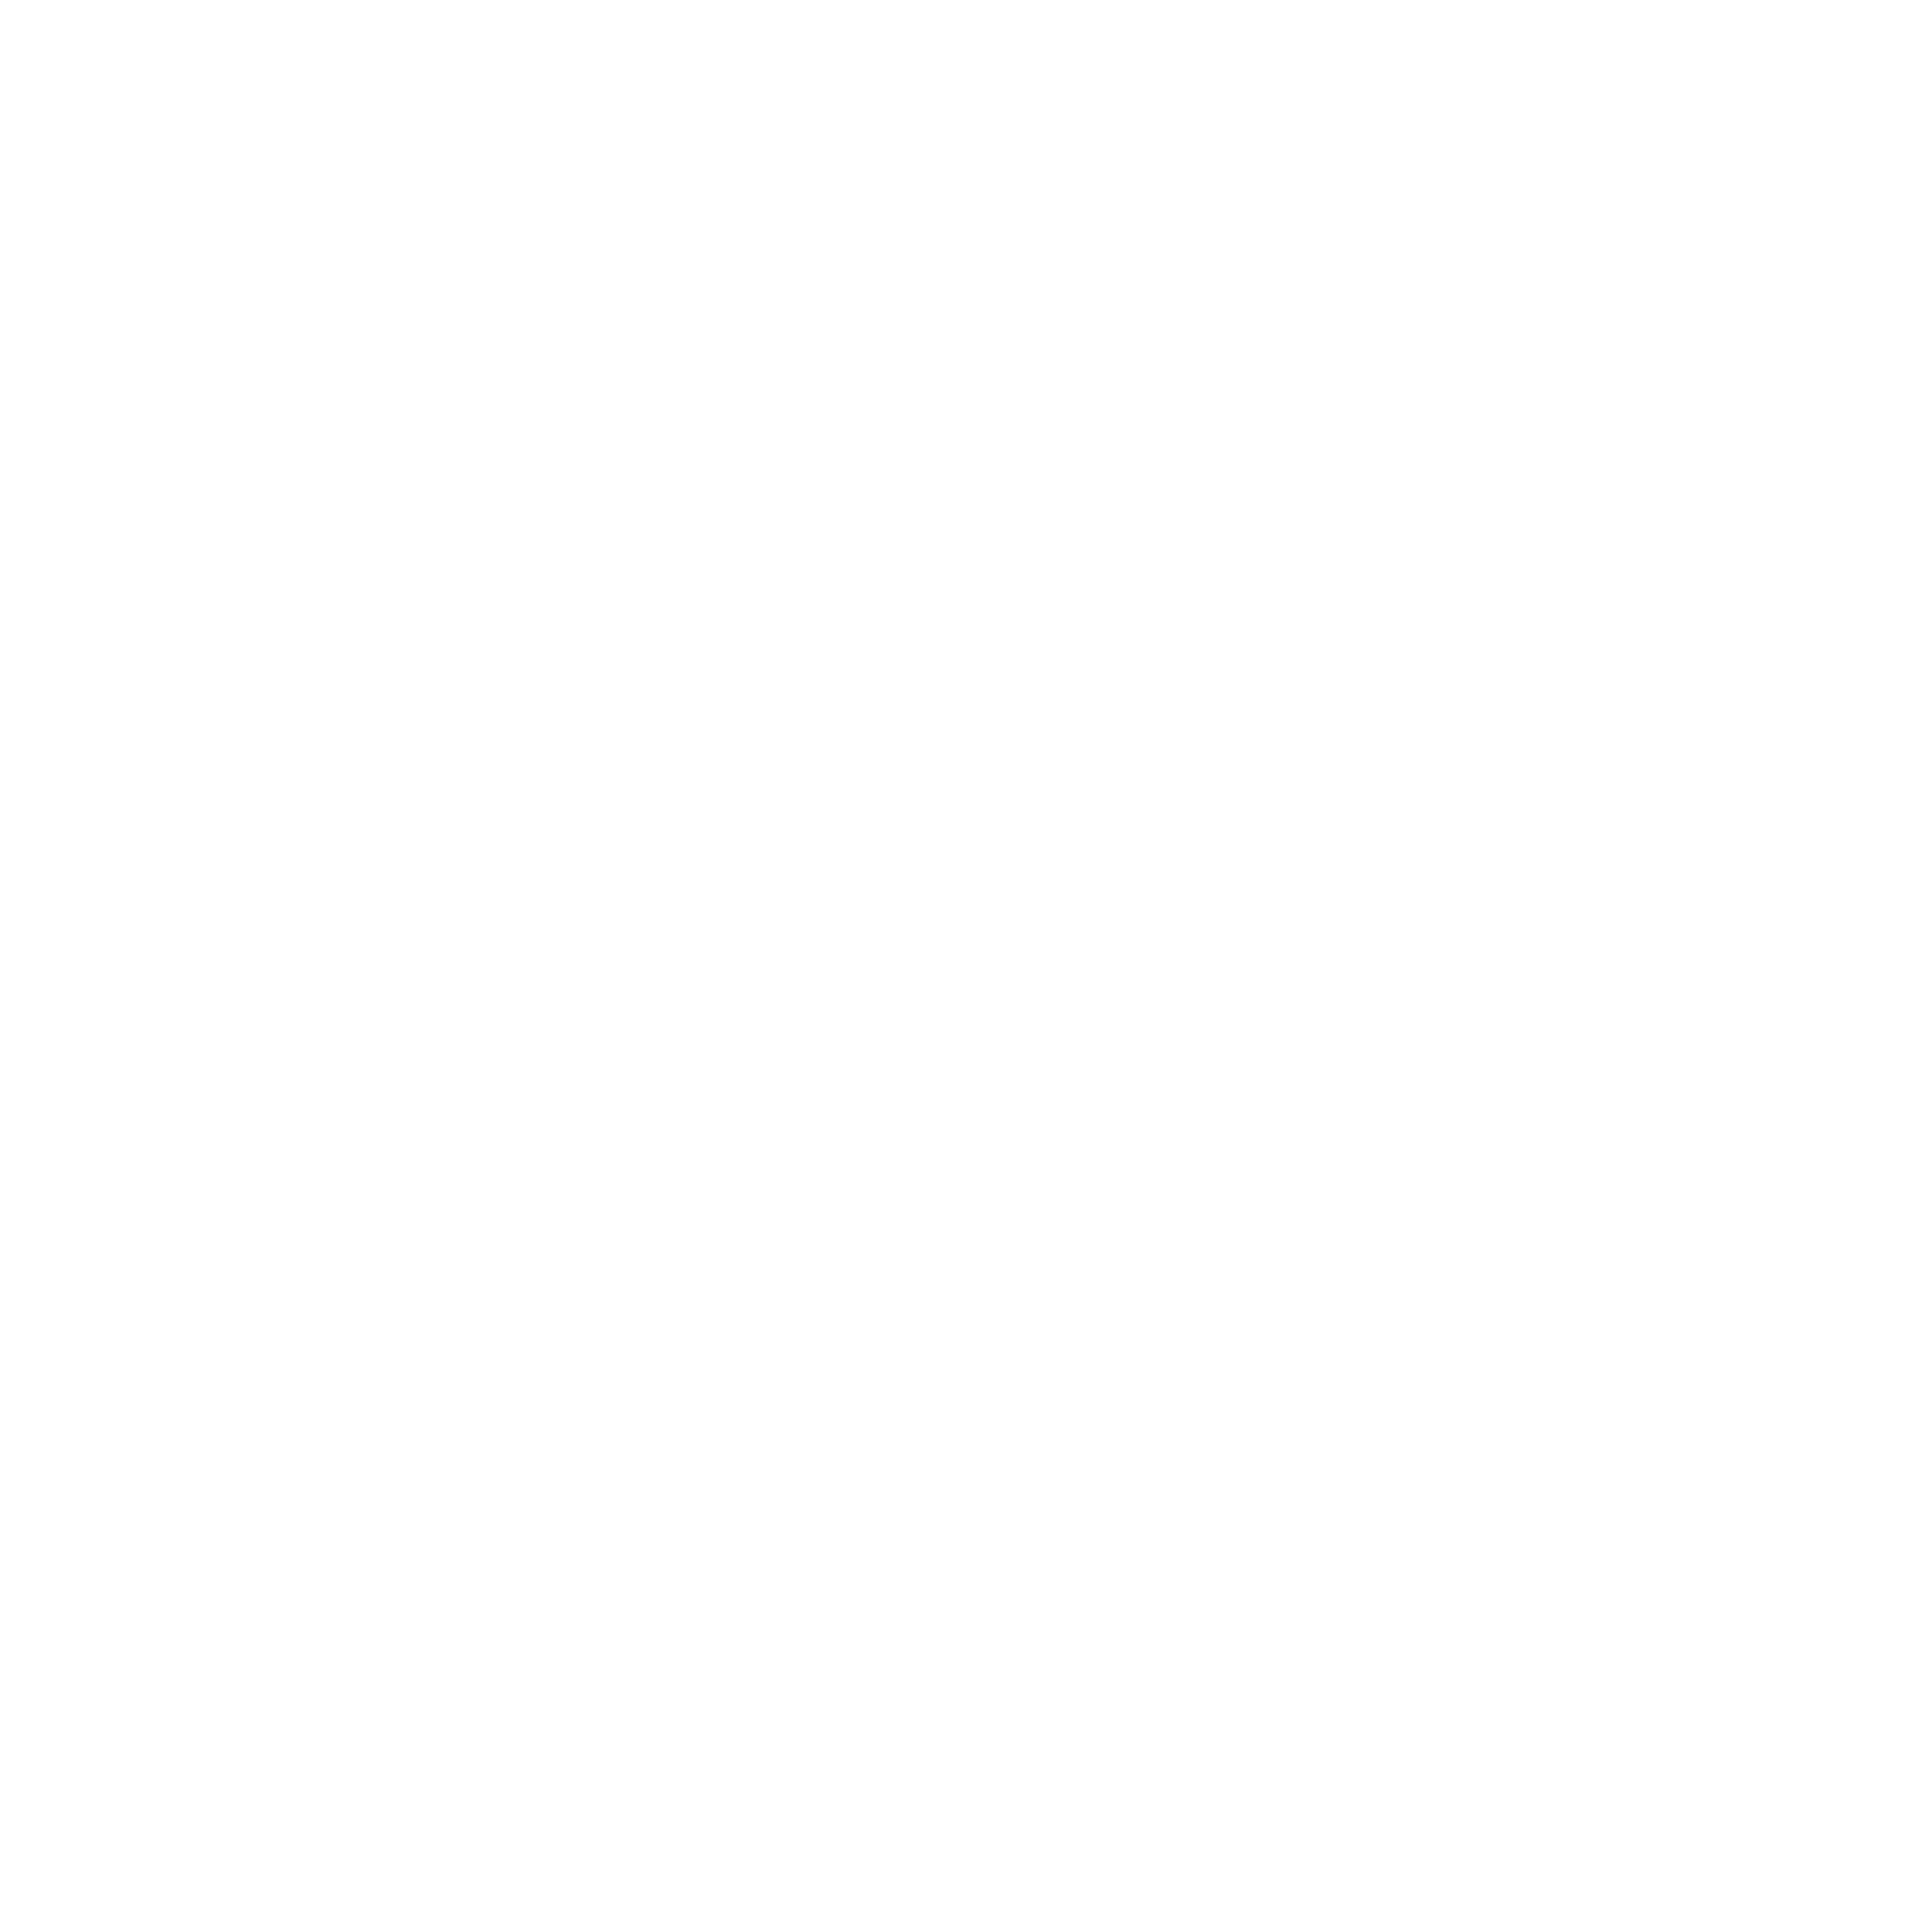 Sandvik Logo PNG Transparent & SVG Vector.